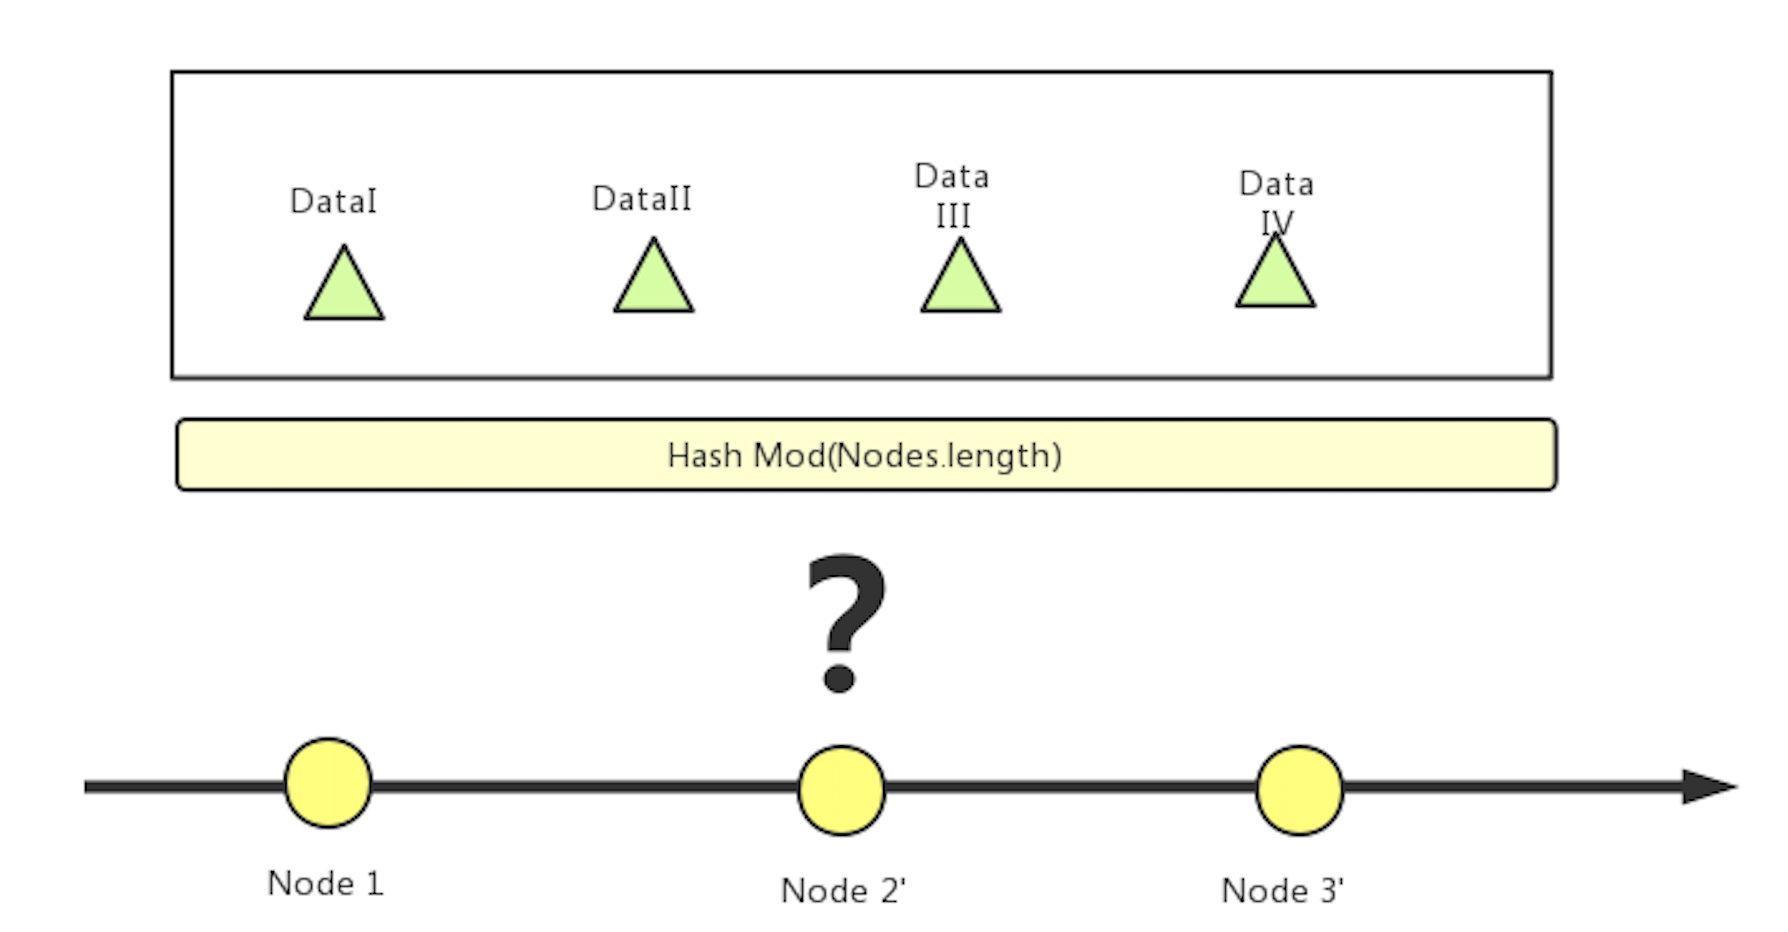 图 7 传统 Hash 分片算法，某个节点下线后将影响全局数据分布